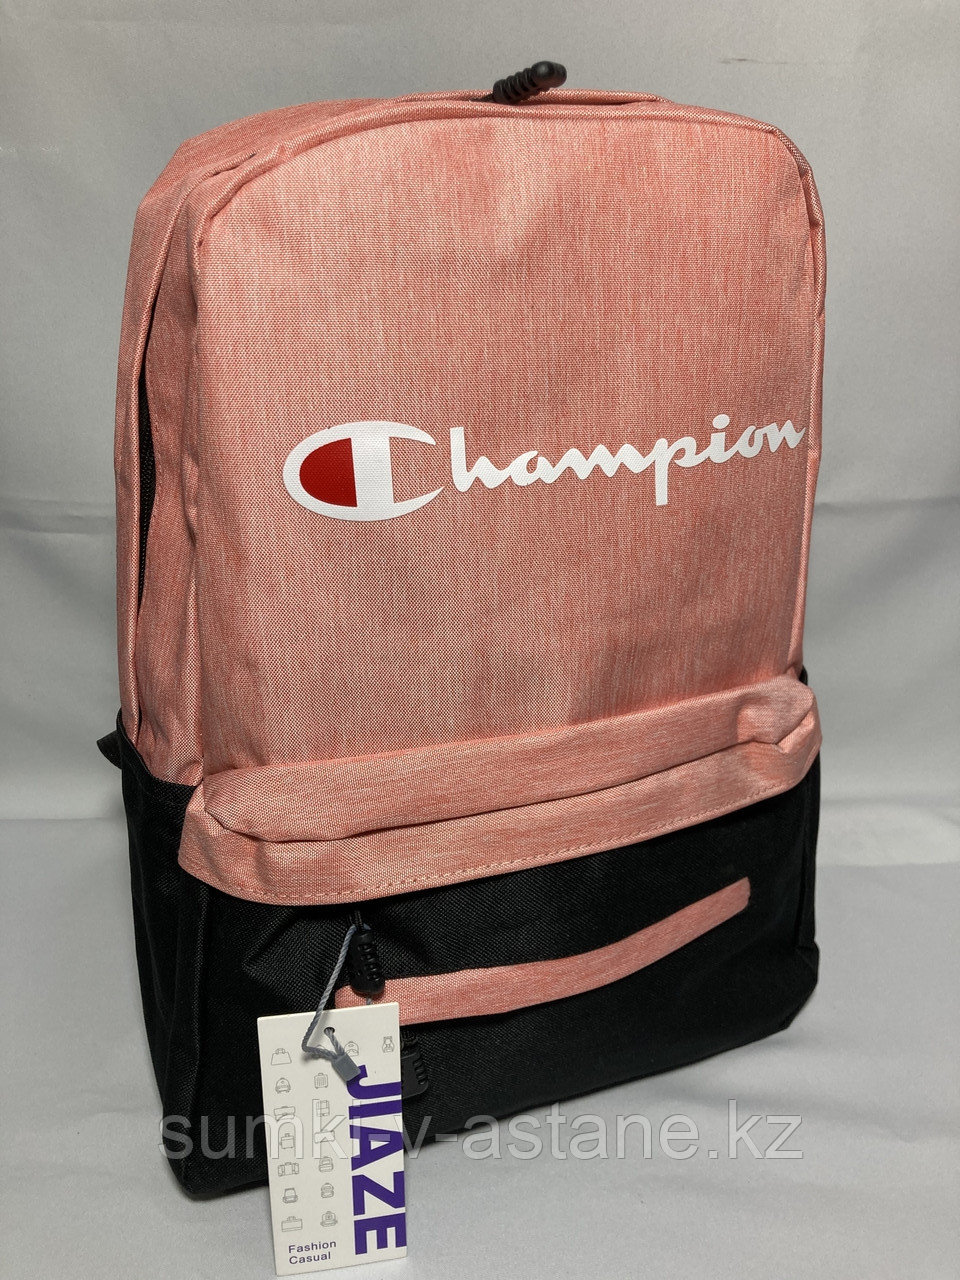 Спортивный рюкзак "Champion" (высота 42 см, ширина 28 см, глубина 17 см)